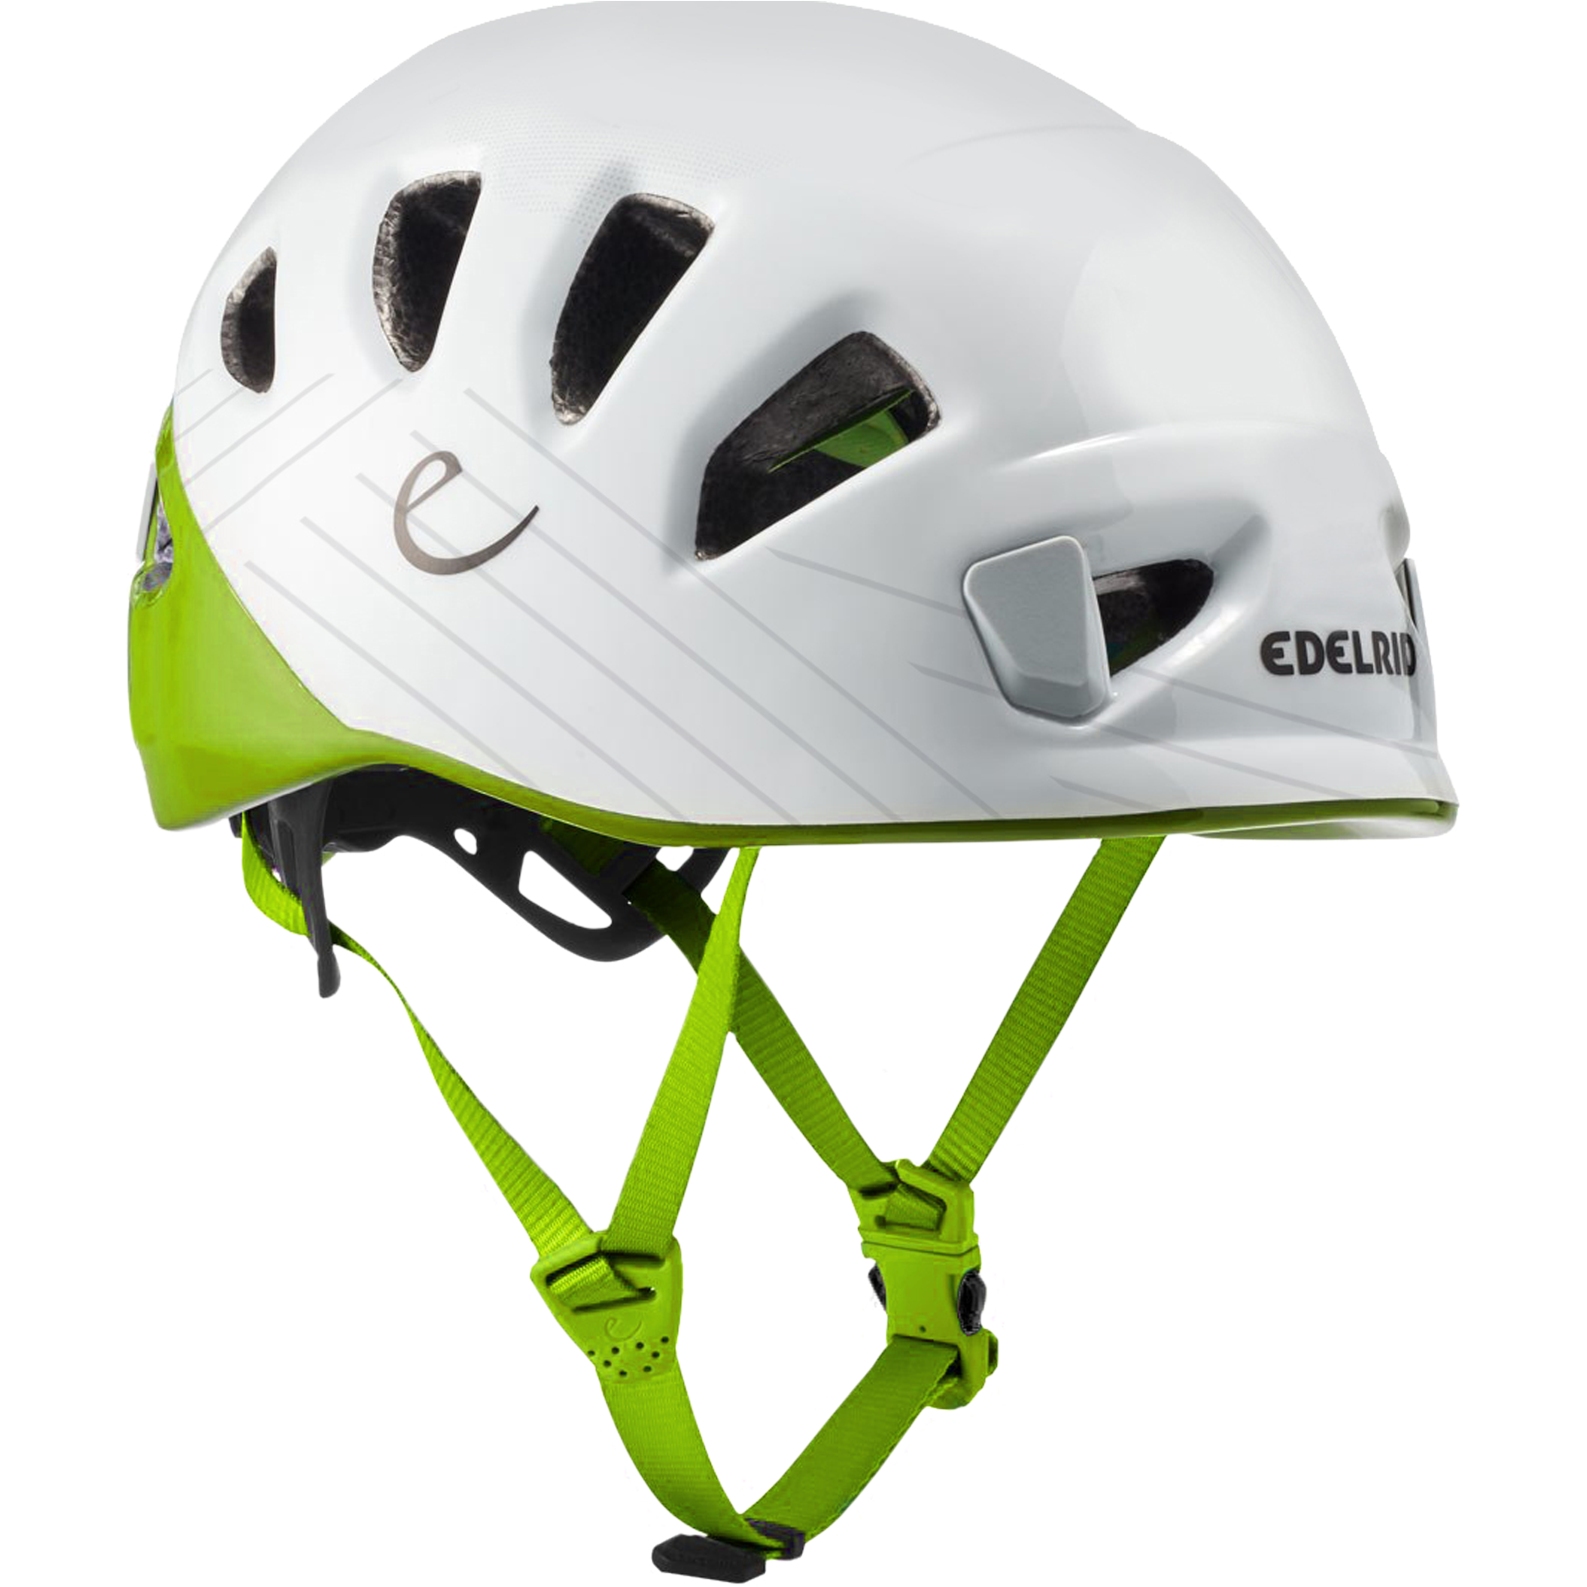 Productfoto van Edelrid Shield II Climbing Helmet - oasis-snow